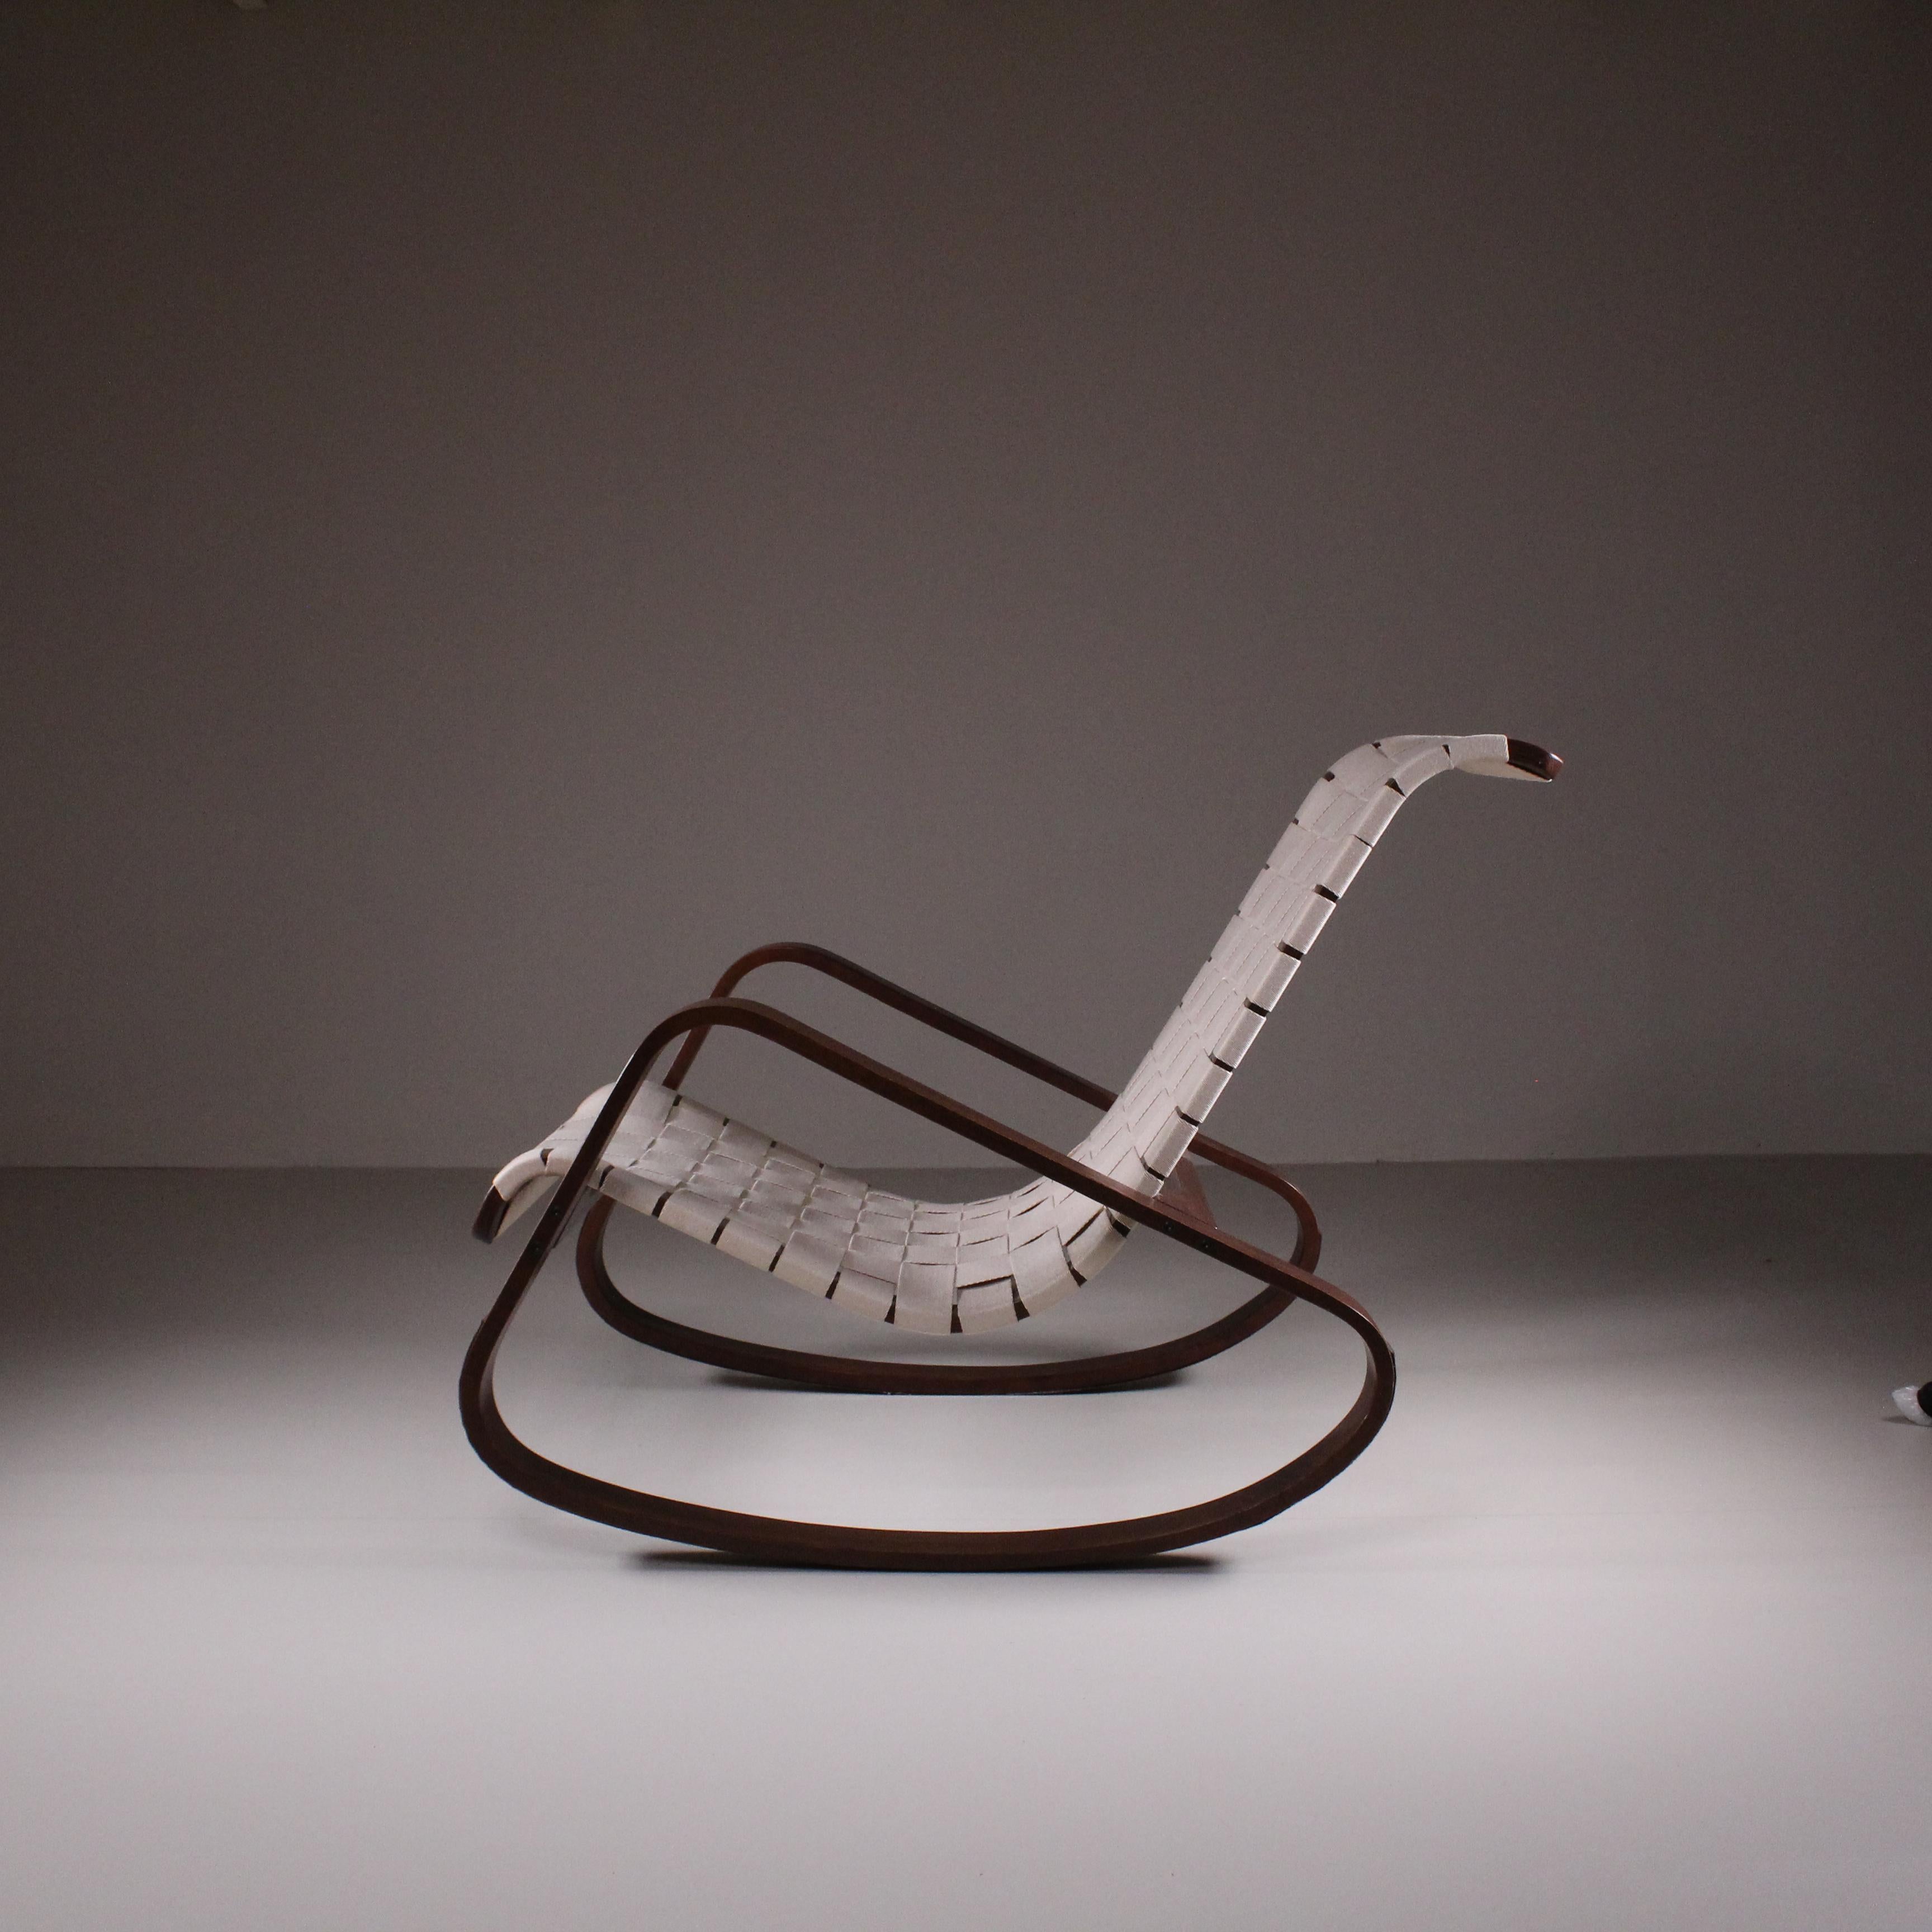 Le Rocking Chair de Luigi Crassevig est une création magistrale qui incarne le confort et l'artisanat. Conçue avec une attention méticuleuse aux détails, cette chaise associe un mouvement de bascule classique à une esthétique contemporaine. Sa